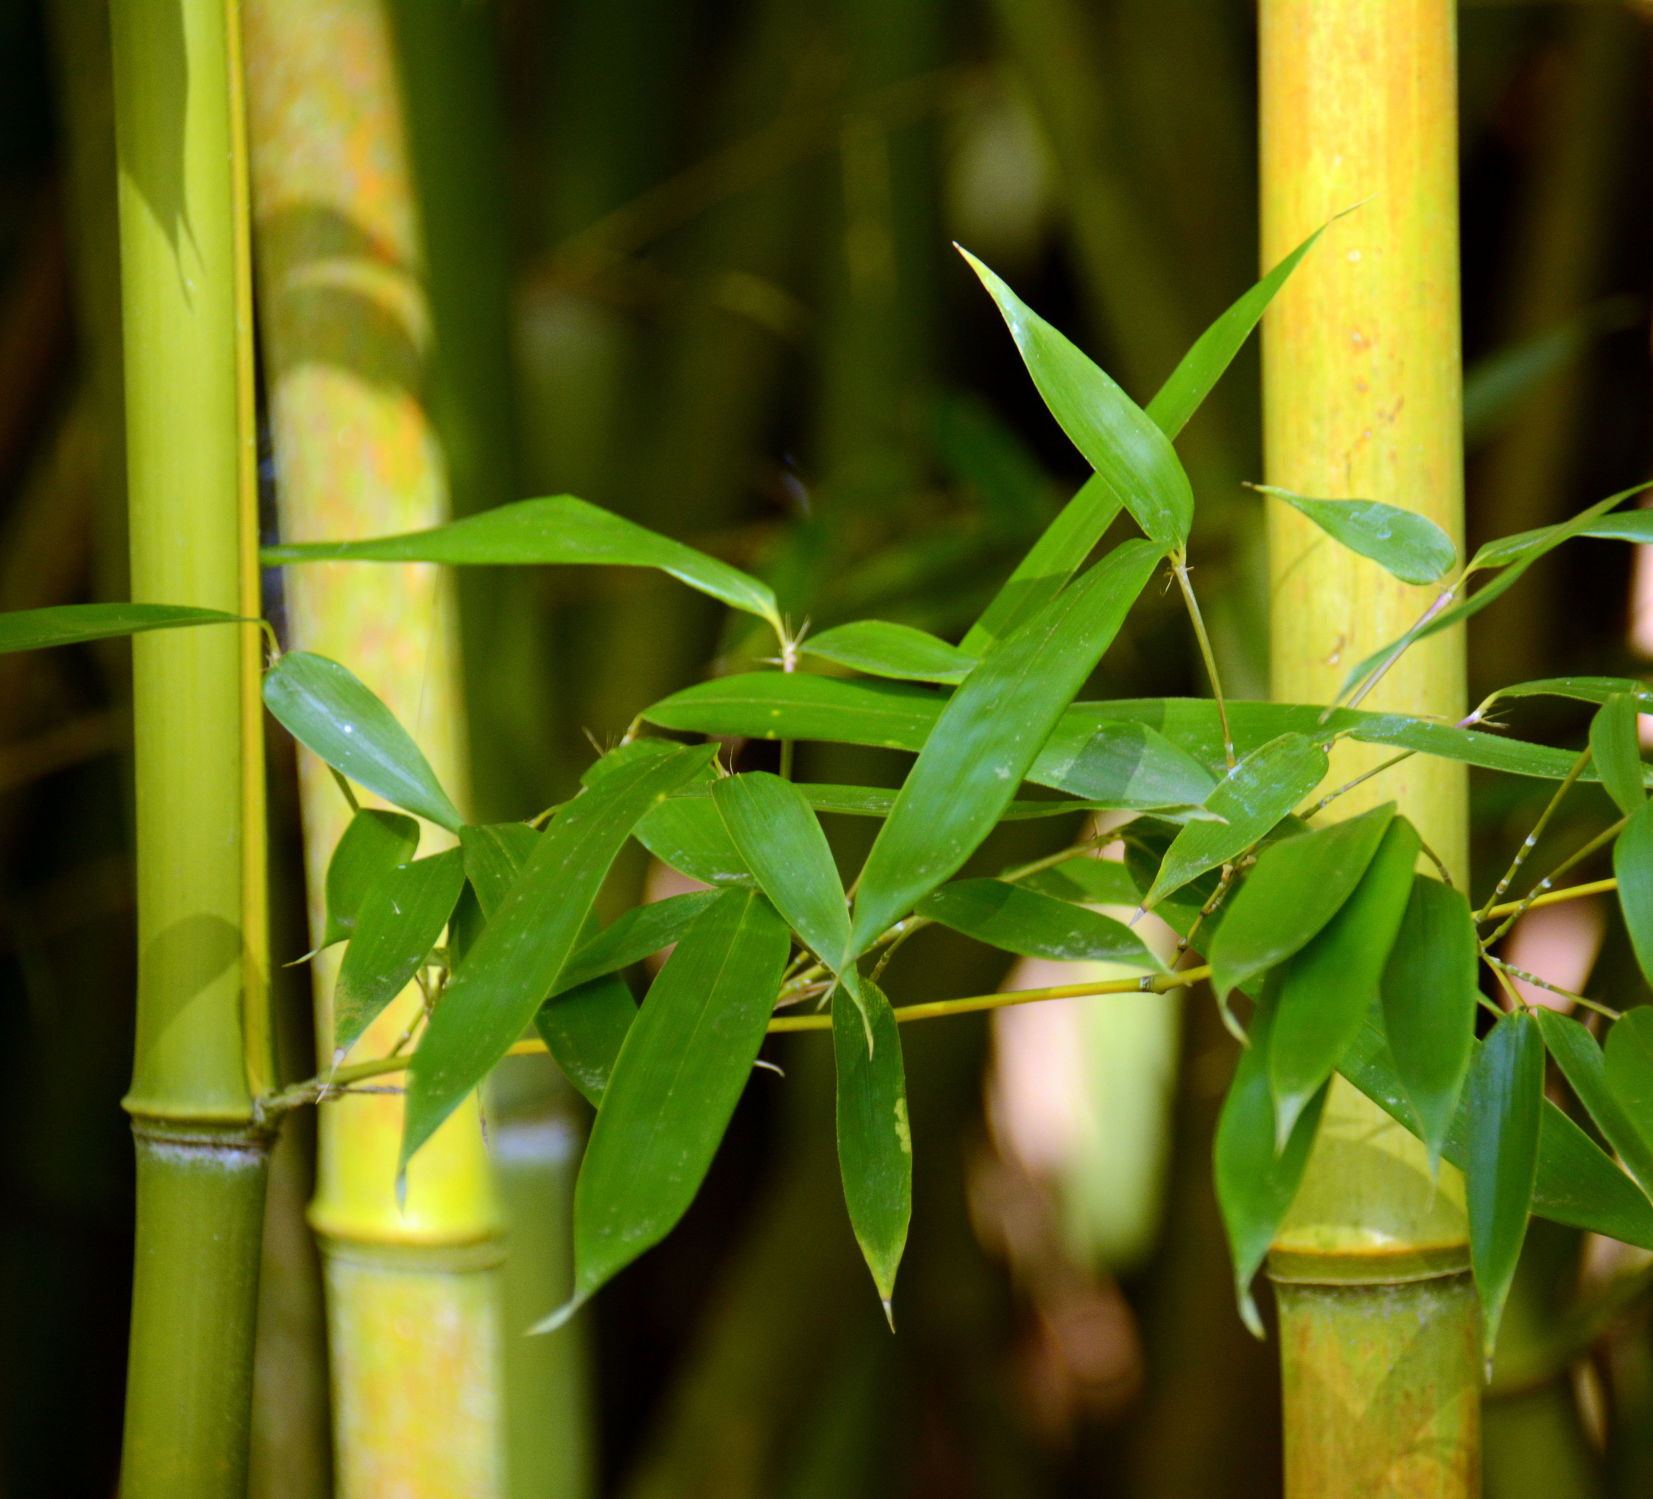 Bild mit Grün, Bambus, bamboo, Wellness, Tapete, fototapete, Deko, dekorativ, green, grüntöne, wandschmuck, wandtapet, beauty, bambusrohr